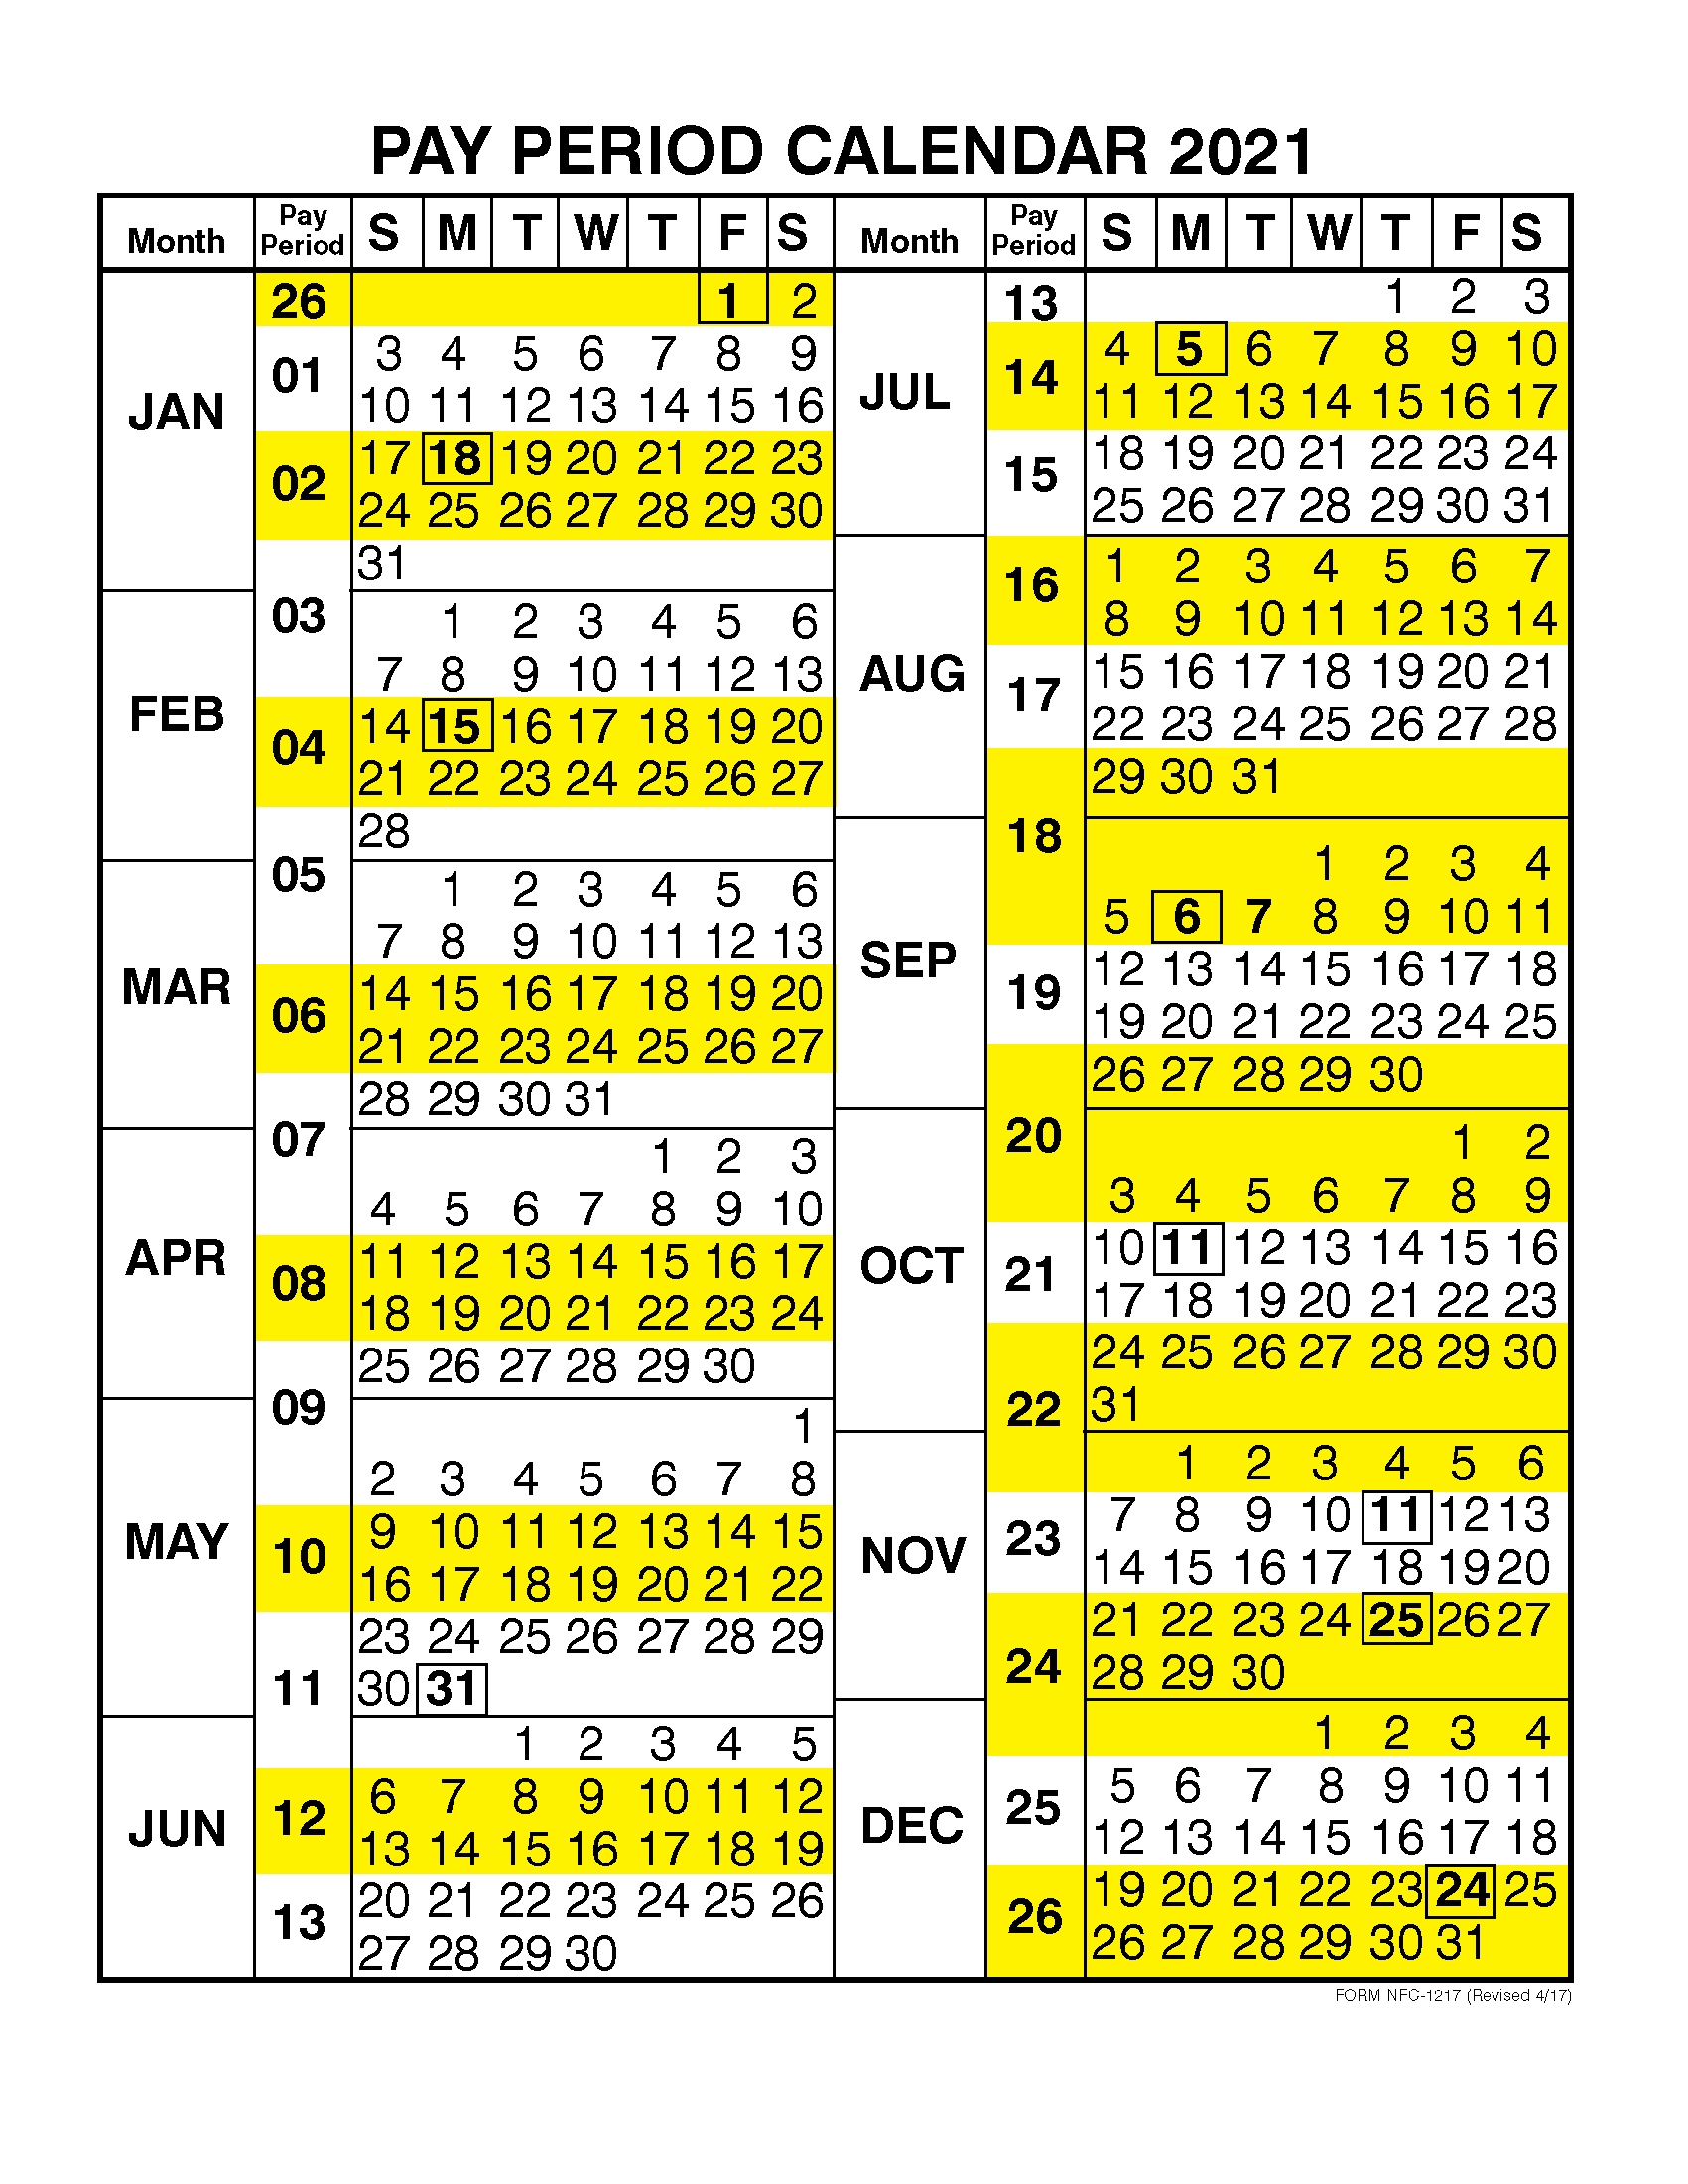 Opm Federal Pay Period Payroll Calendar 2020 Template Calendar Design